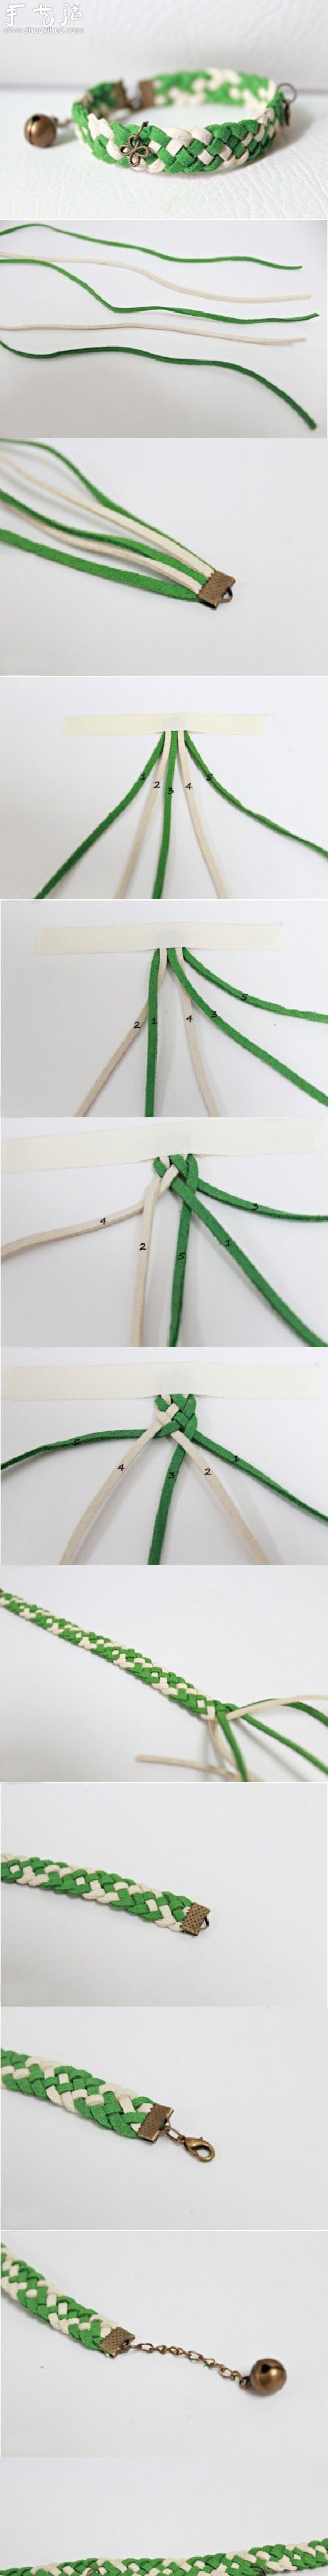 清新绿色手链的编织教程 